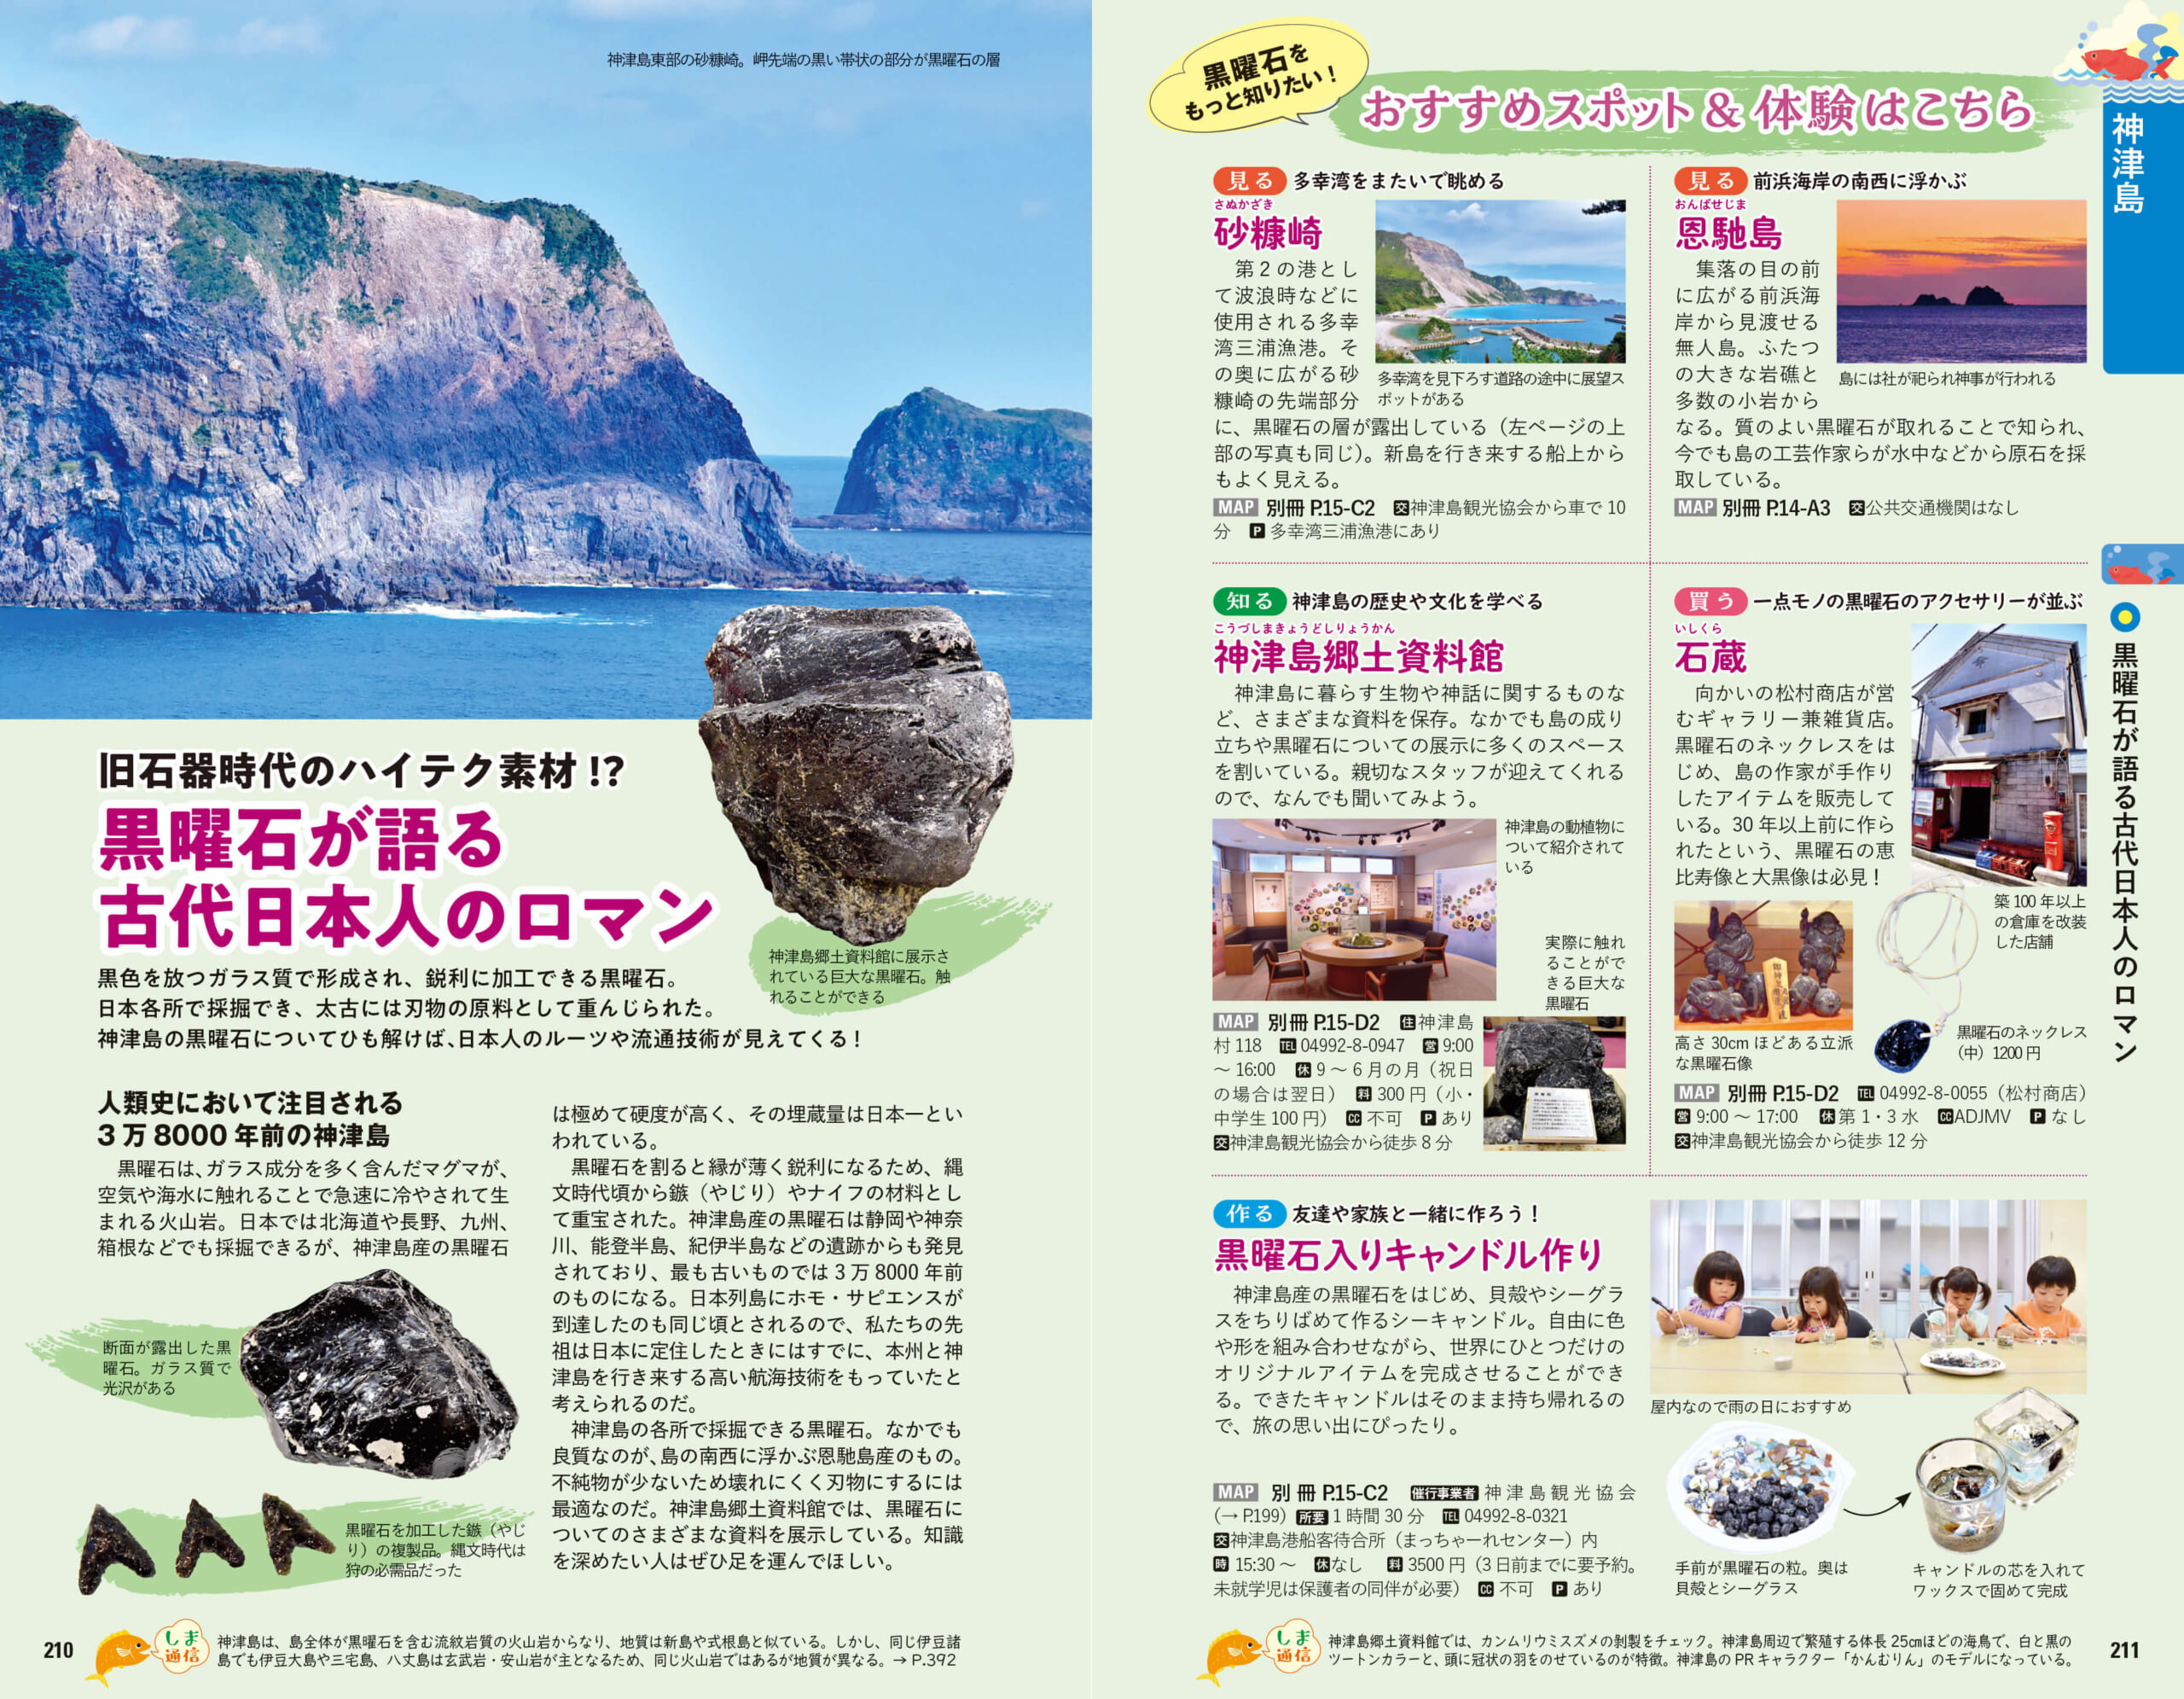 「東京諸島では島ごとに地質が異なり、その違いから島の成り立ちも読みとくことができる」紙面